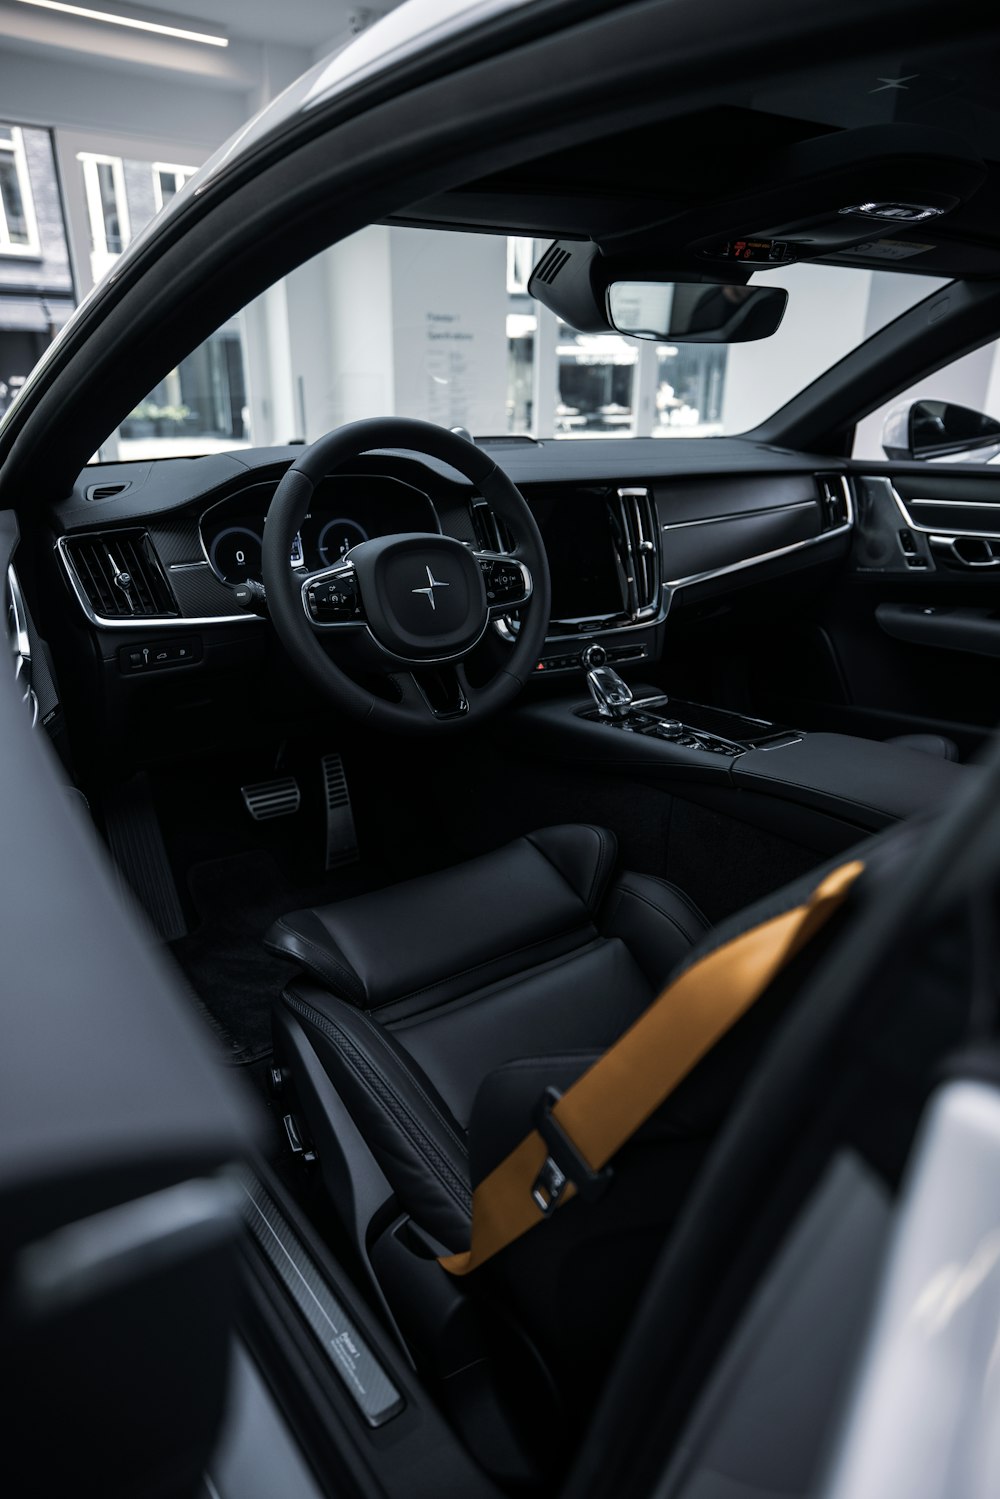 Interior del coche en negro y marrón